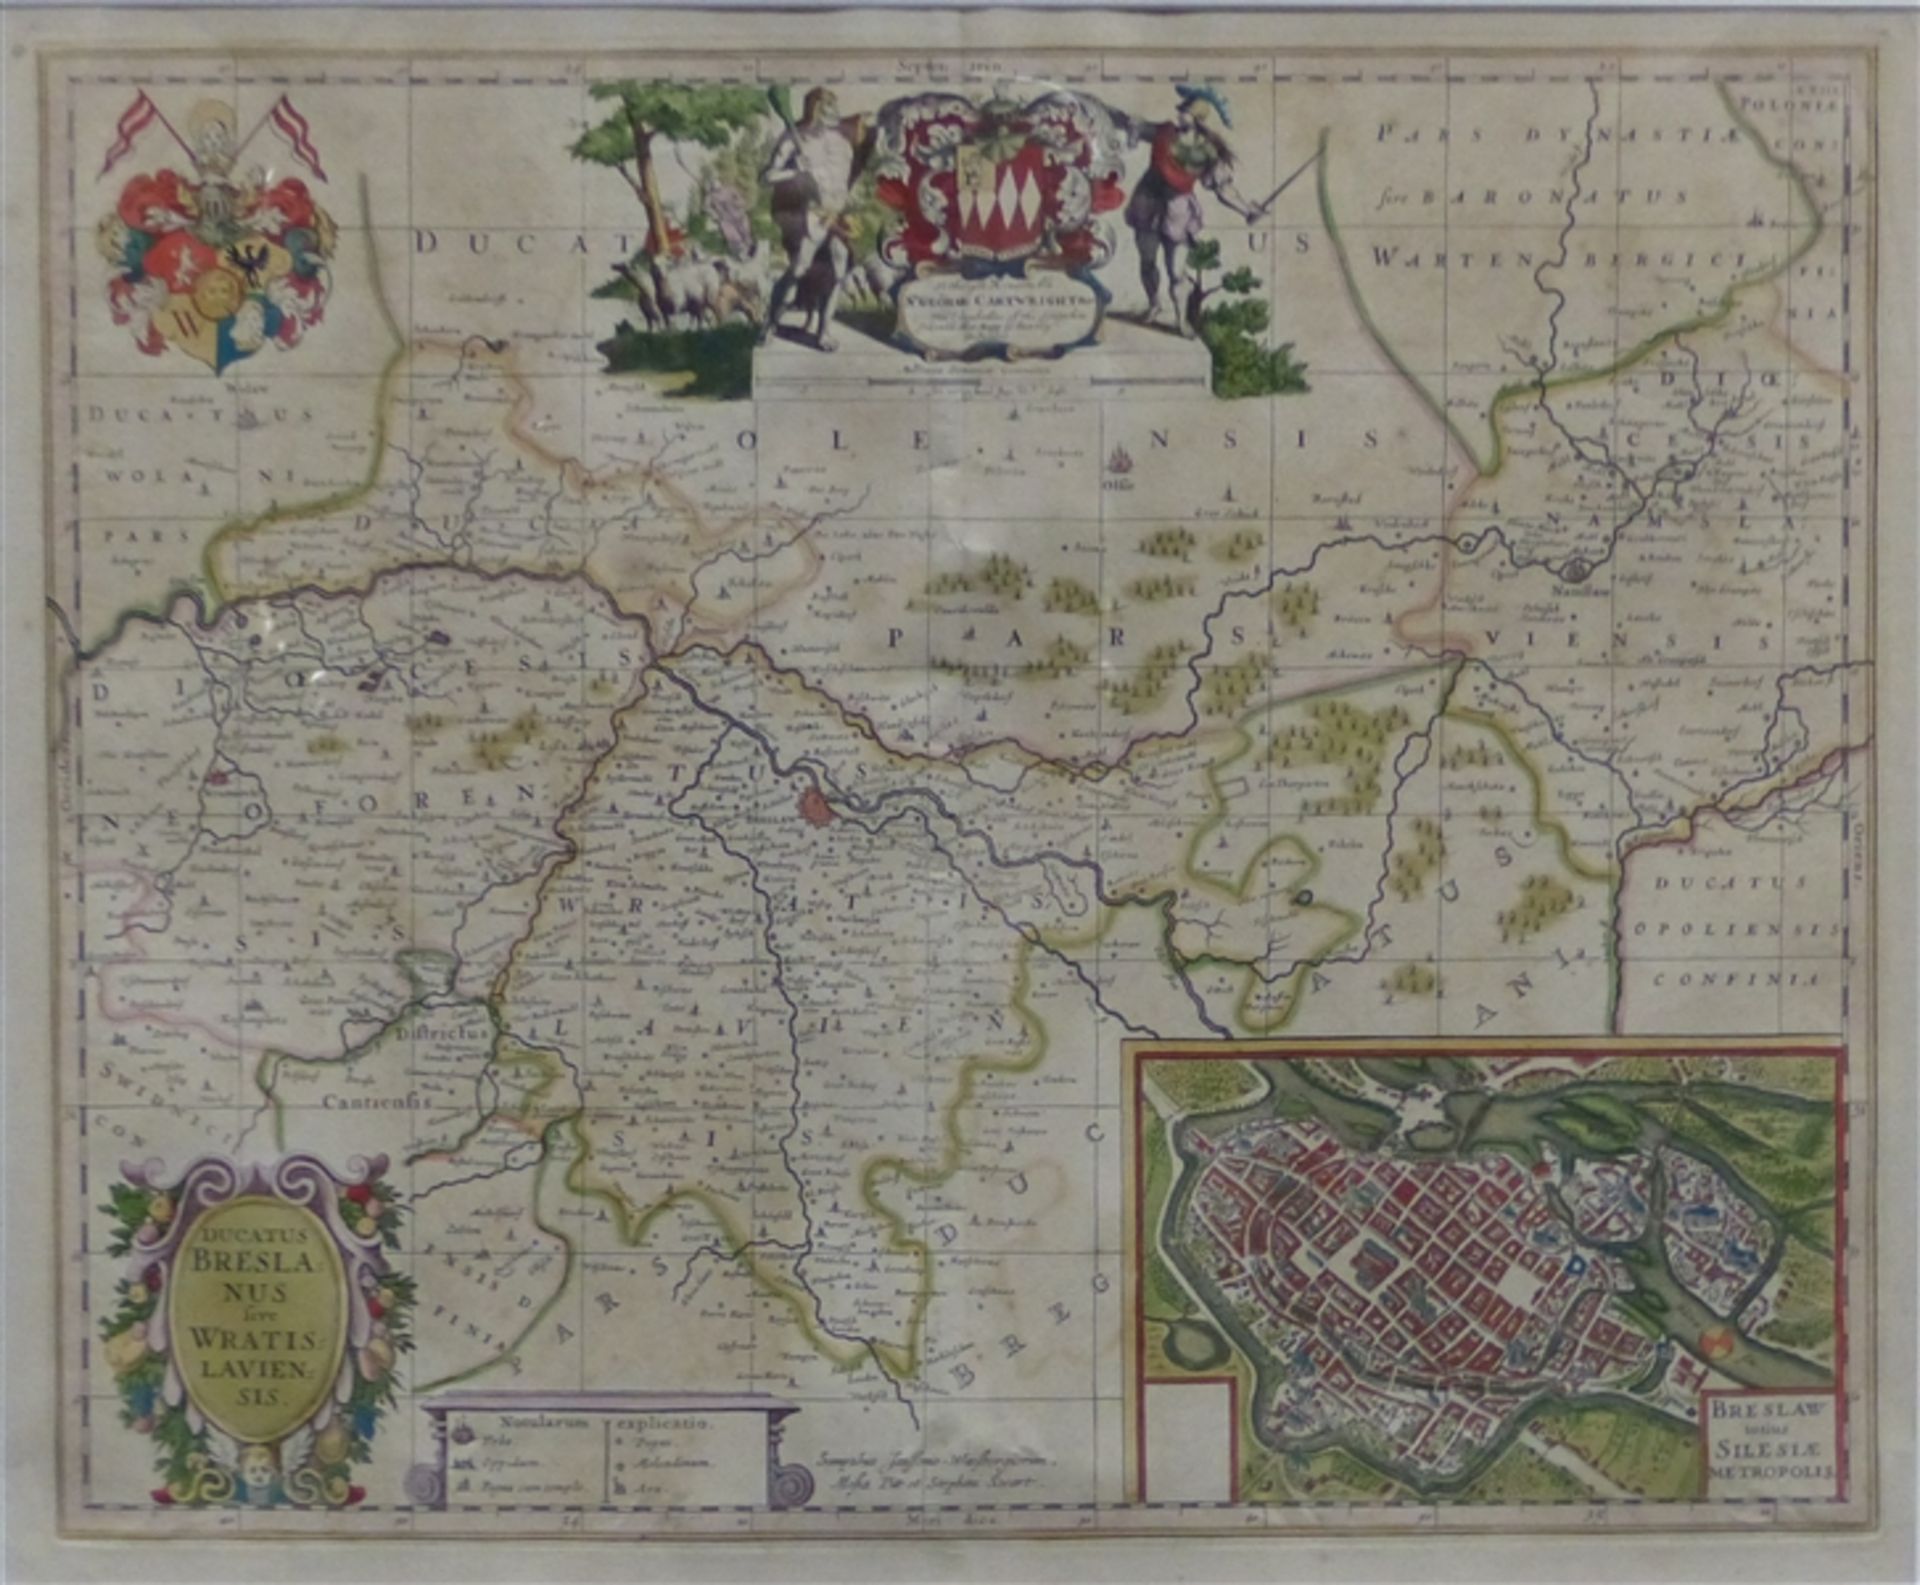 Kupferkarte, 18 Jh. Gegend um Breslau, reich coloriert, Städtemotiv, Wappendekor und Kurzlegende von